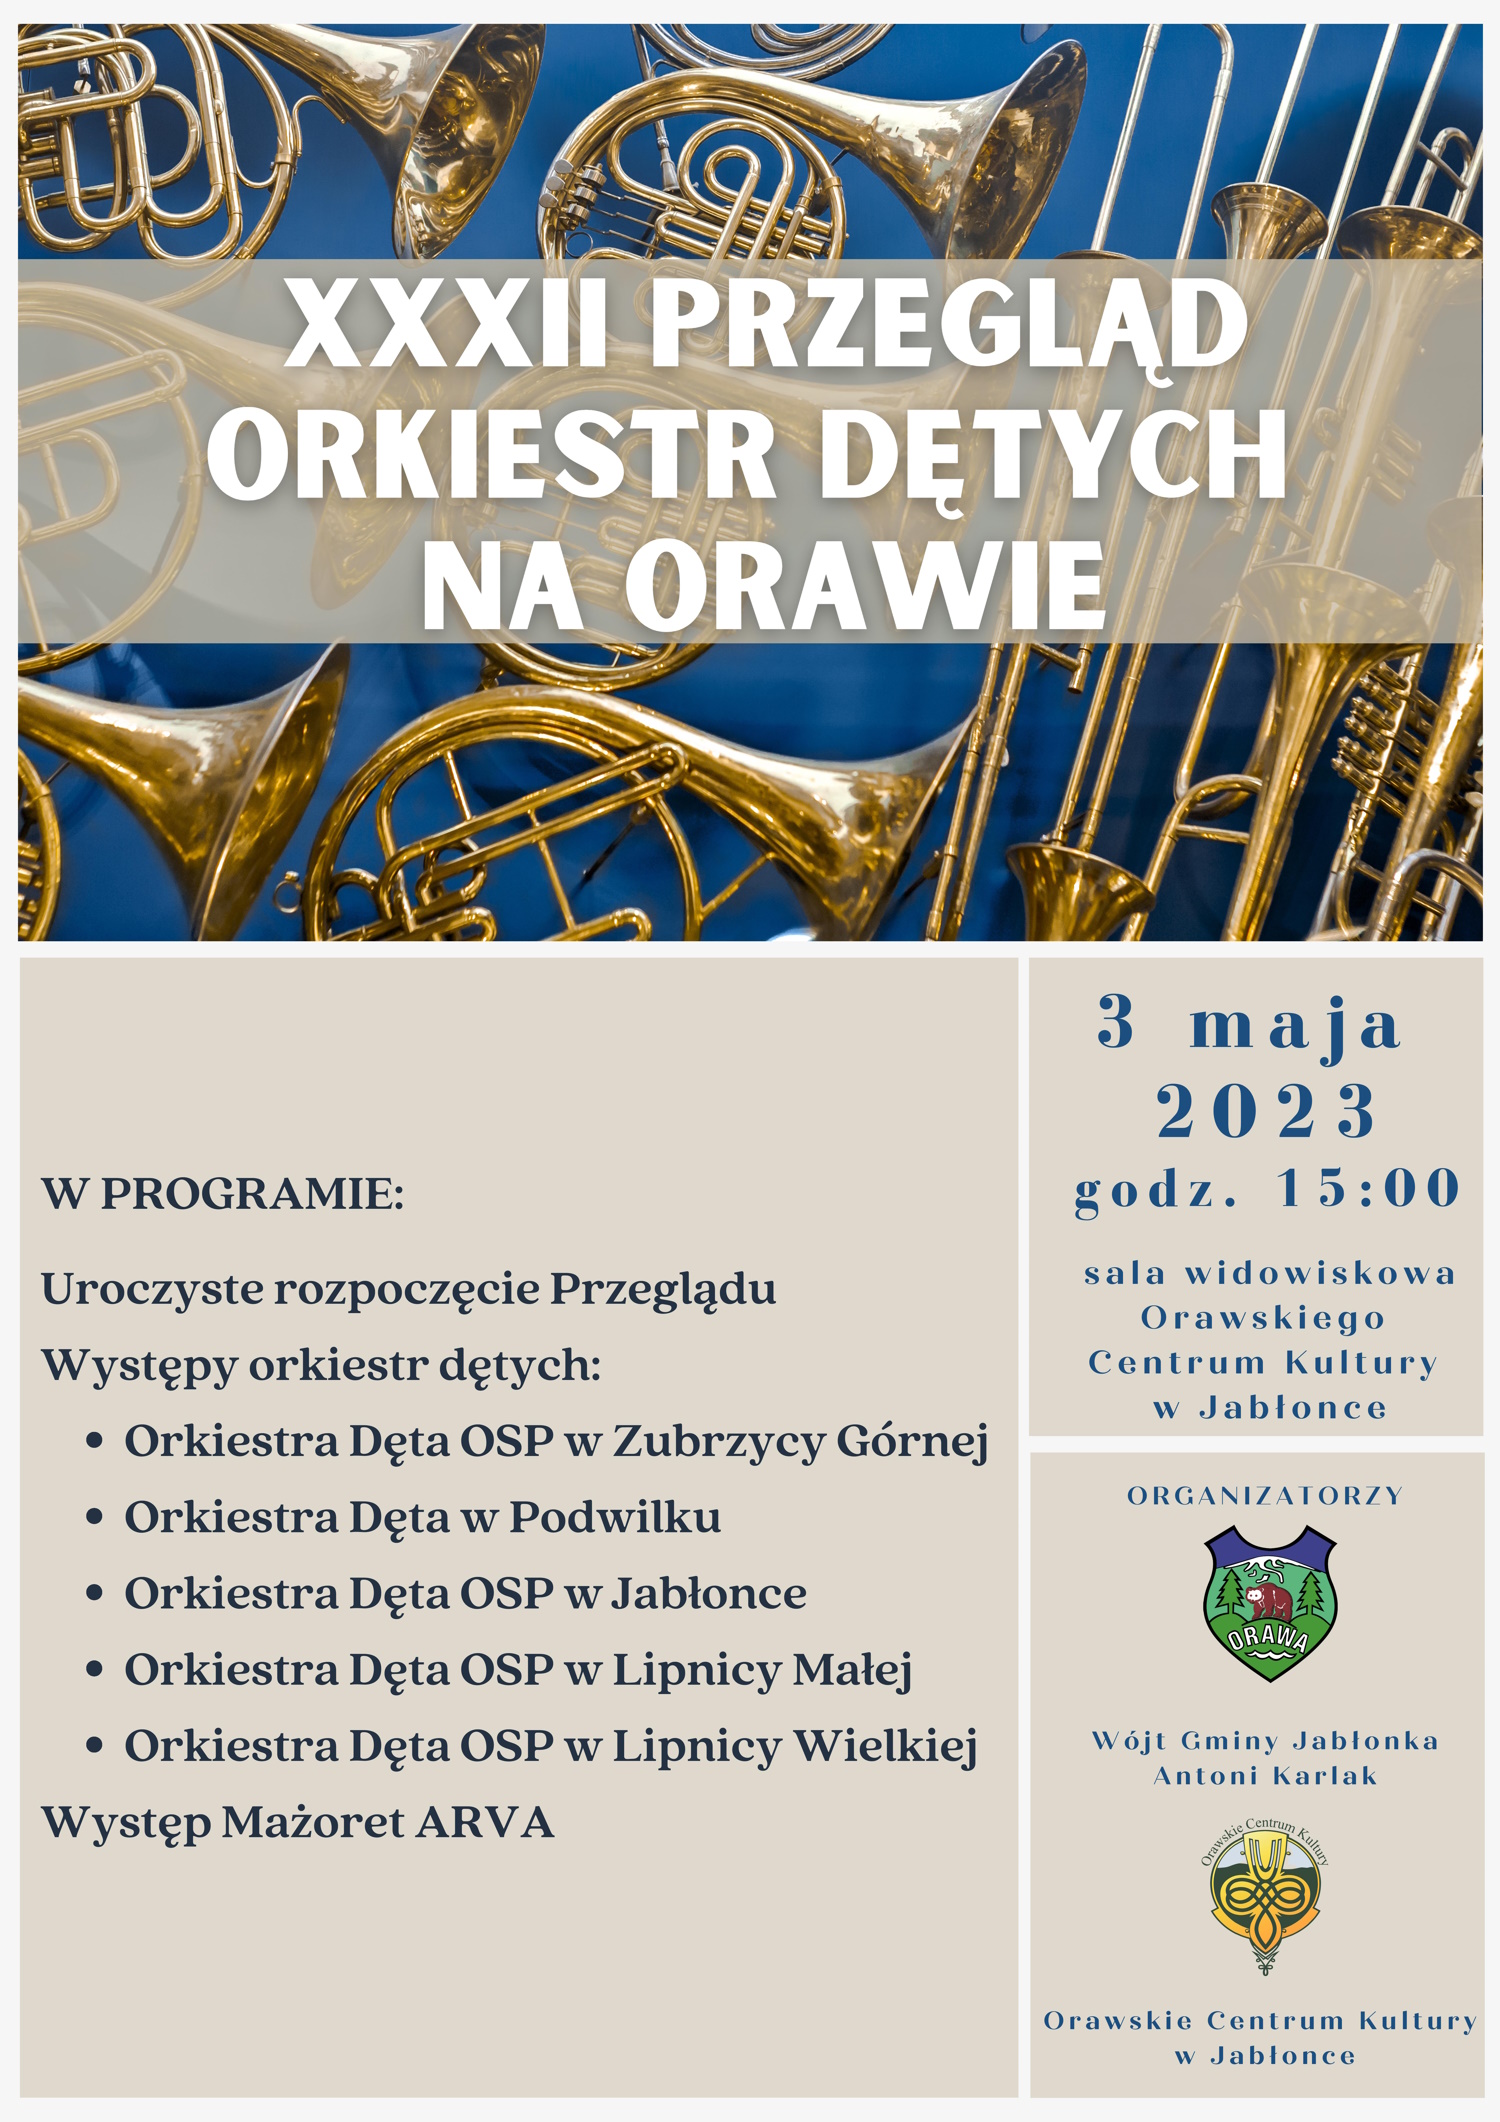 XXXII Przeglad Orkiestr Detych